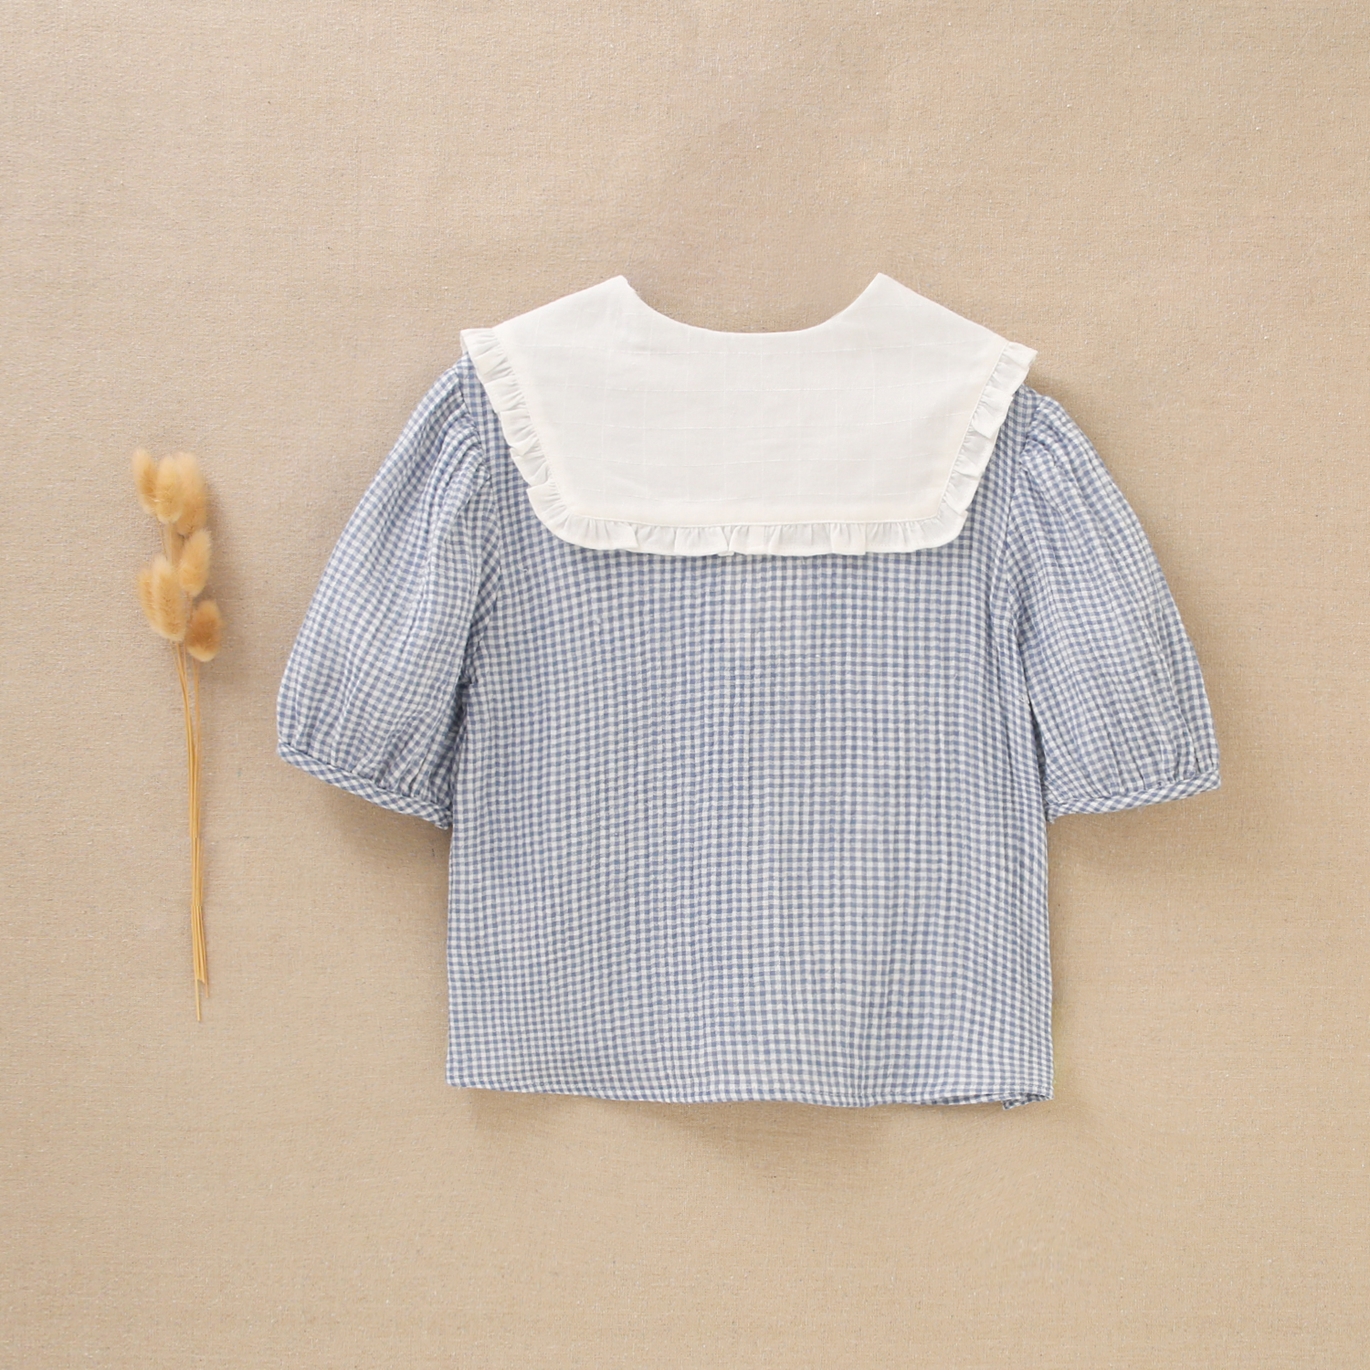 Imagen de Blusa de niña en cuadros vichy azules y blancos